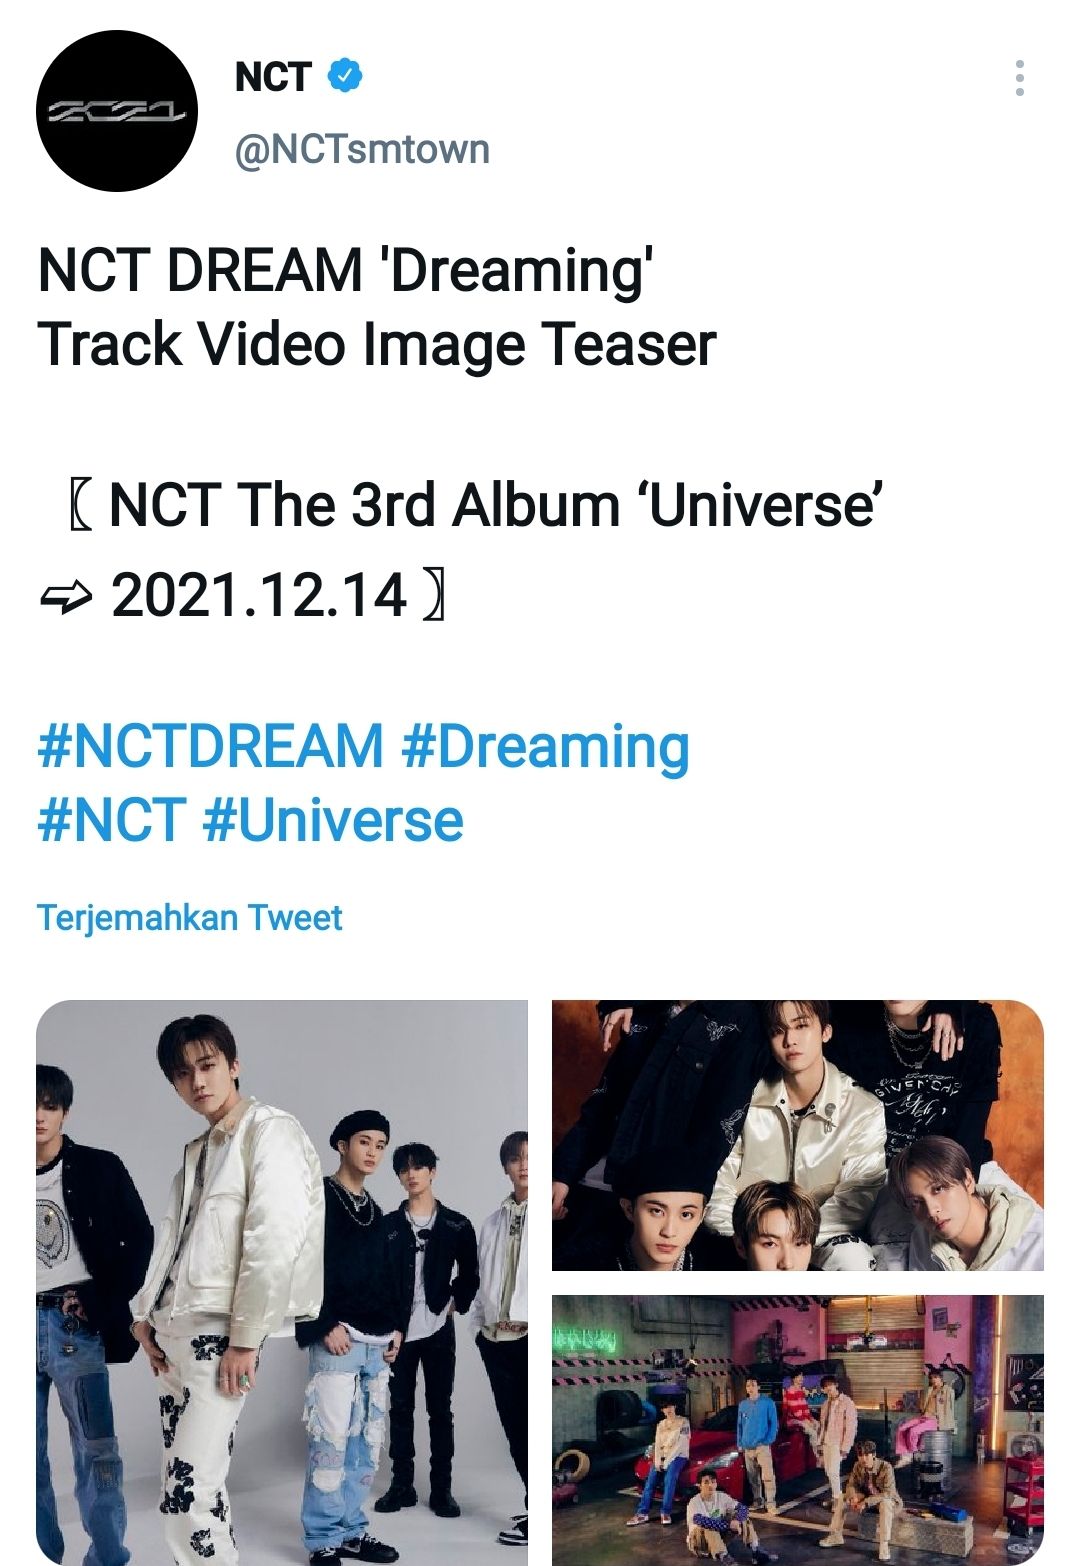 NCT Dream Rilis Teaser Gambar Lagu 'Dreaming' yang Pancarkan Aura Renjun Dkk untuk Album 'UNIVERSE' NCT 2021